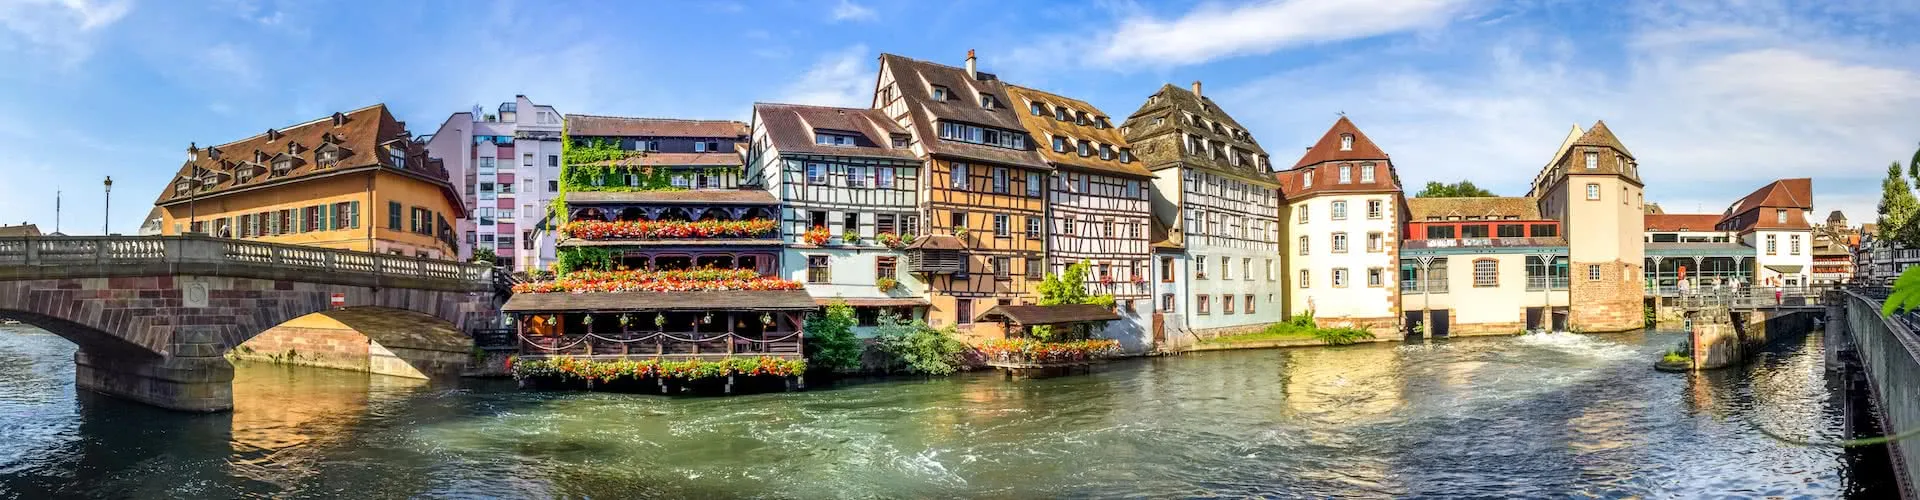 Strassburg - das Reiseziel für Geschäftsreisen